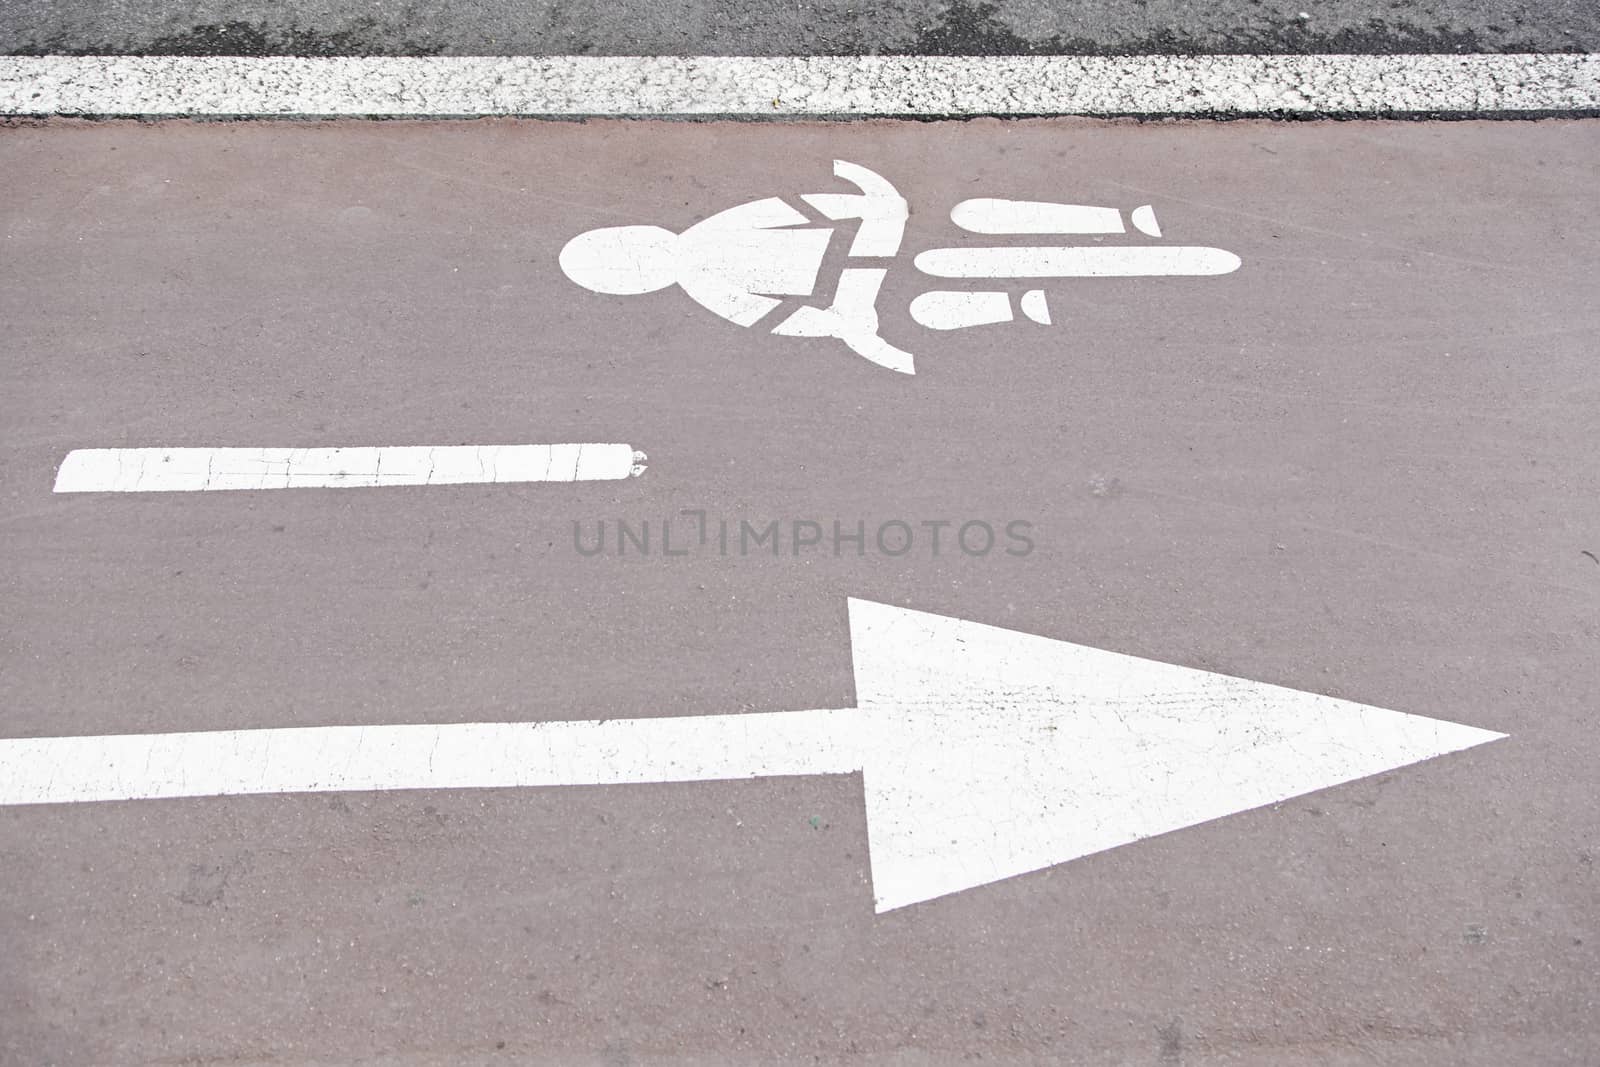 Ride a bike lane, detail signal to travel by bike